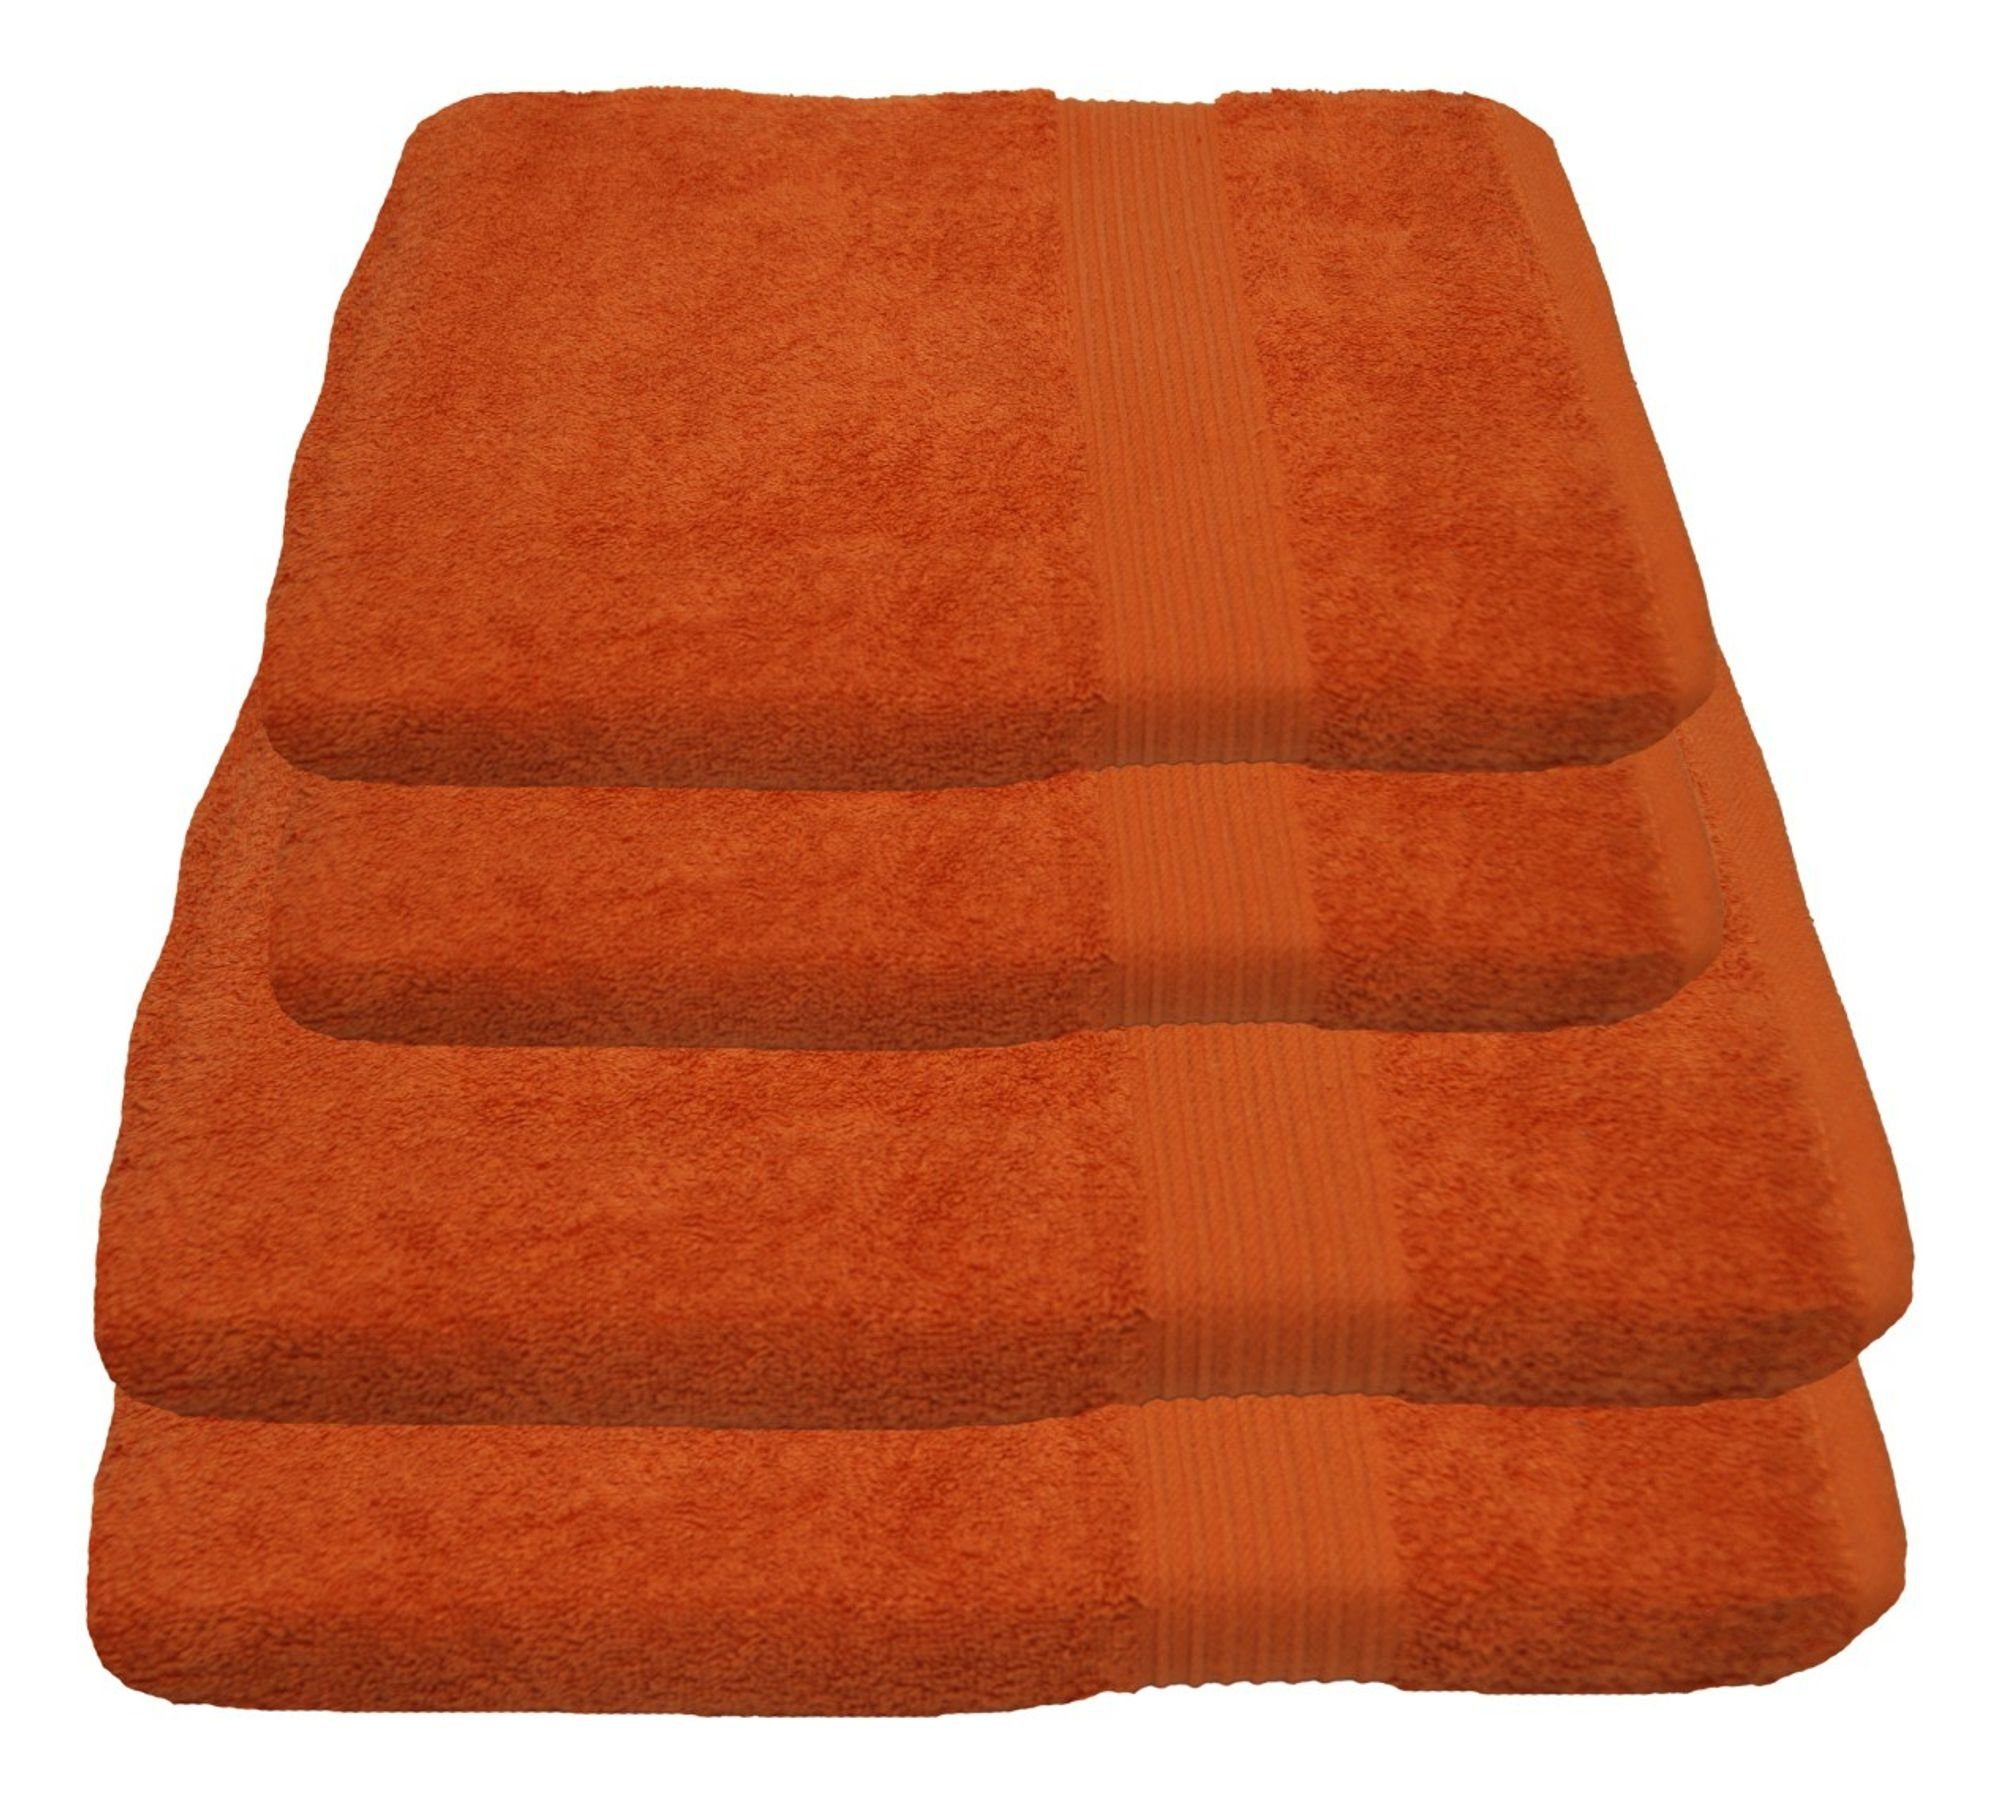 Terracotta Handtücher online kaufen | OTTO